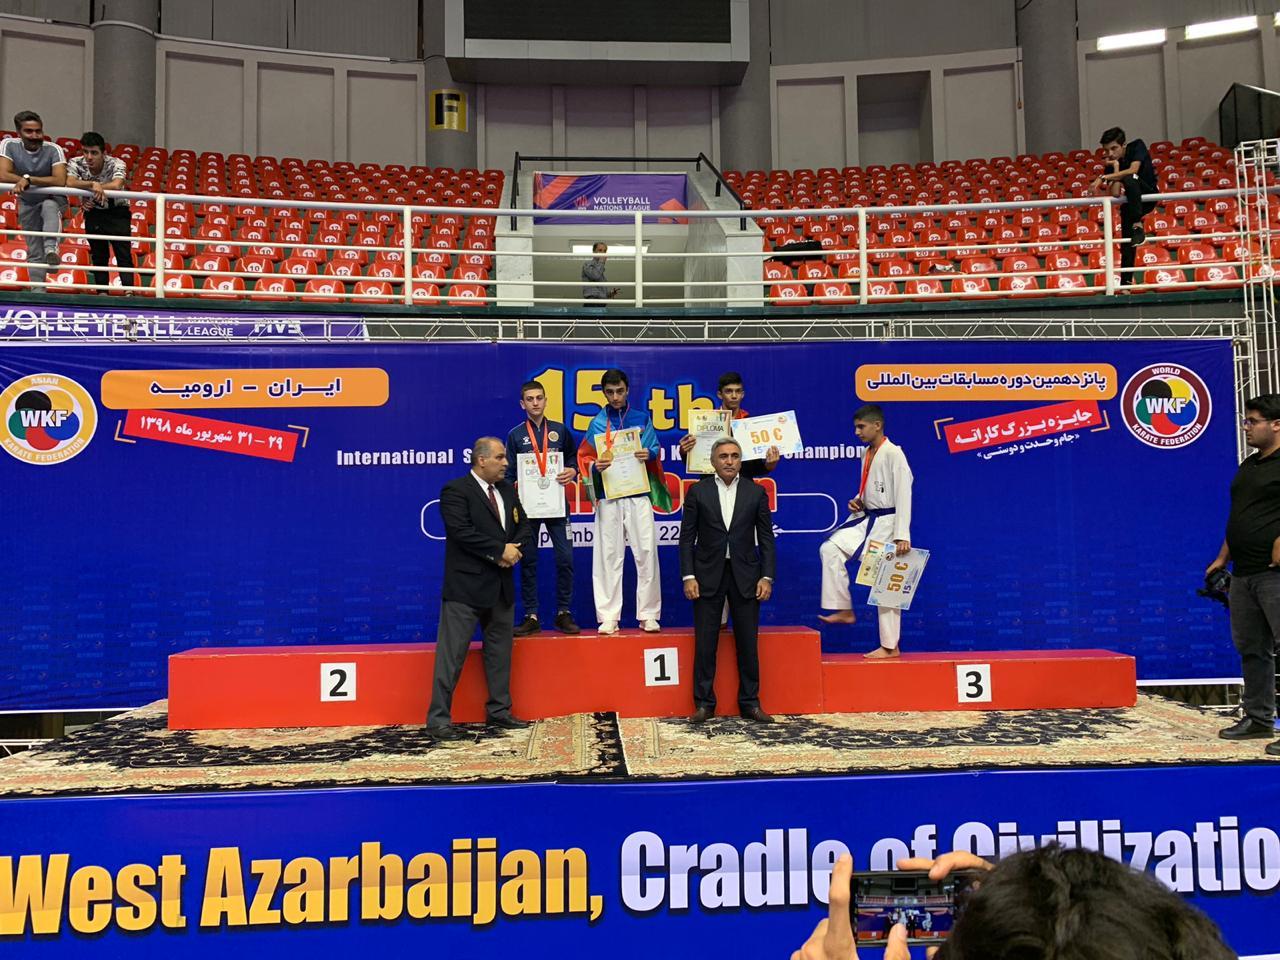 Azərbaycan karateçisi ermənini məğlub edərək qızıl medal qazanıb